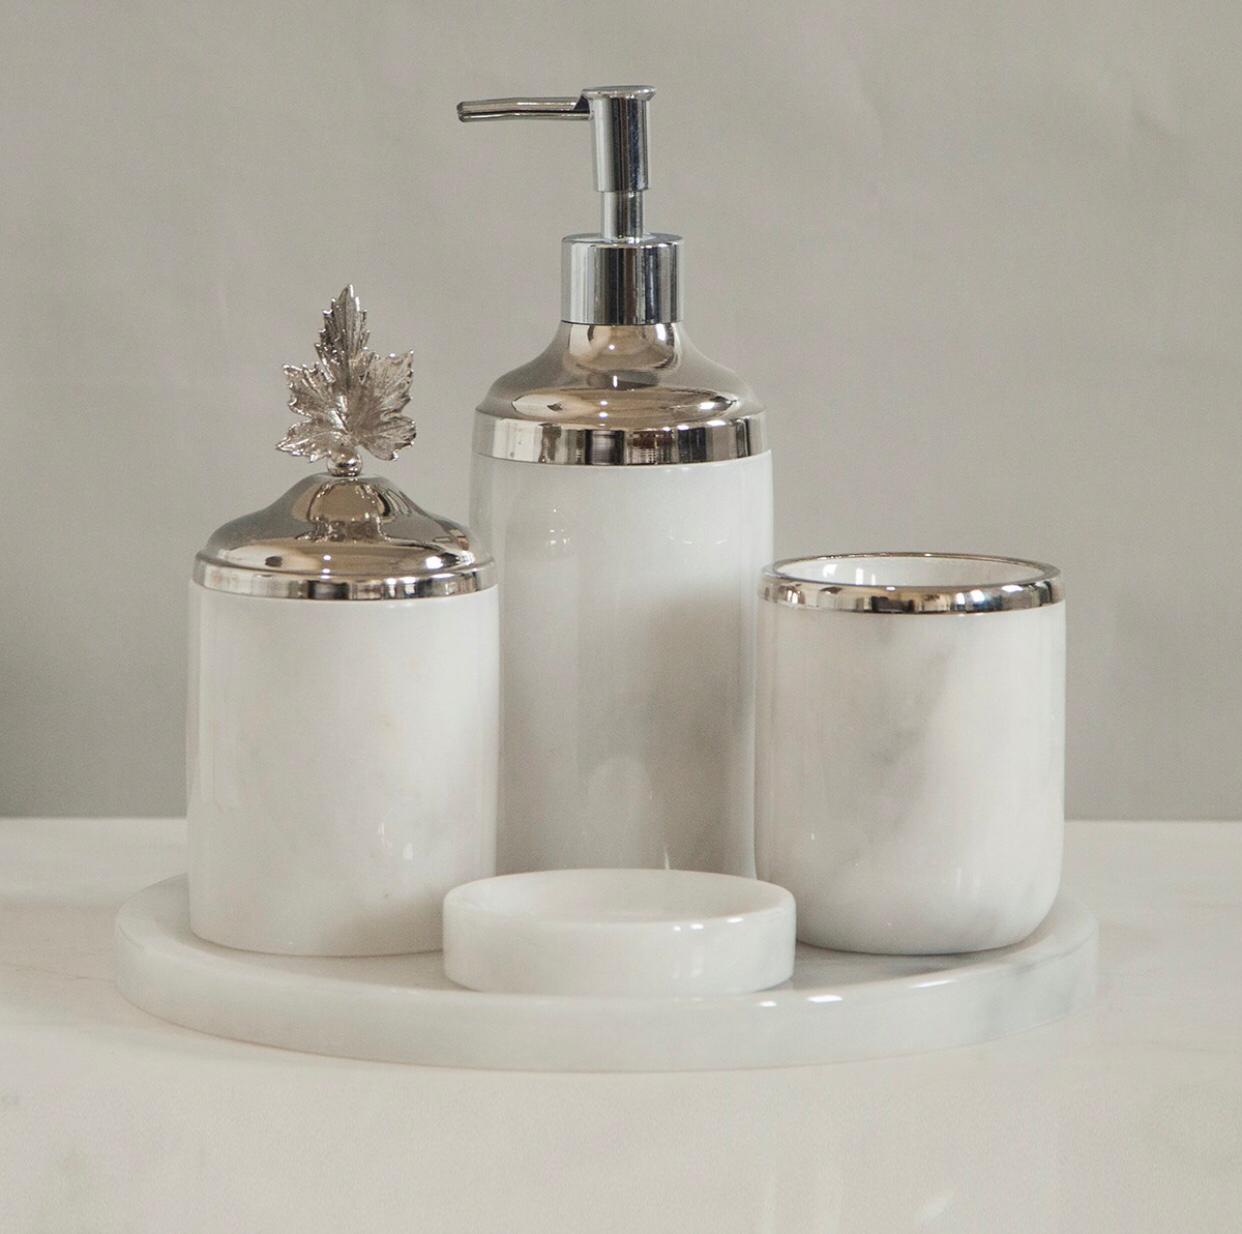 Yeni Model Afyon Beyaz Mermer 5li Banyo Seti (Gümüş Aksesuar)